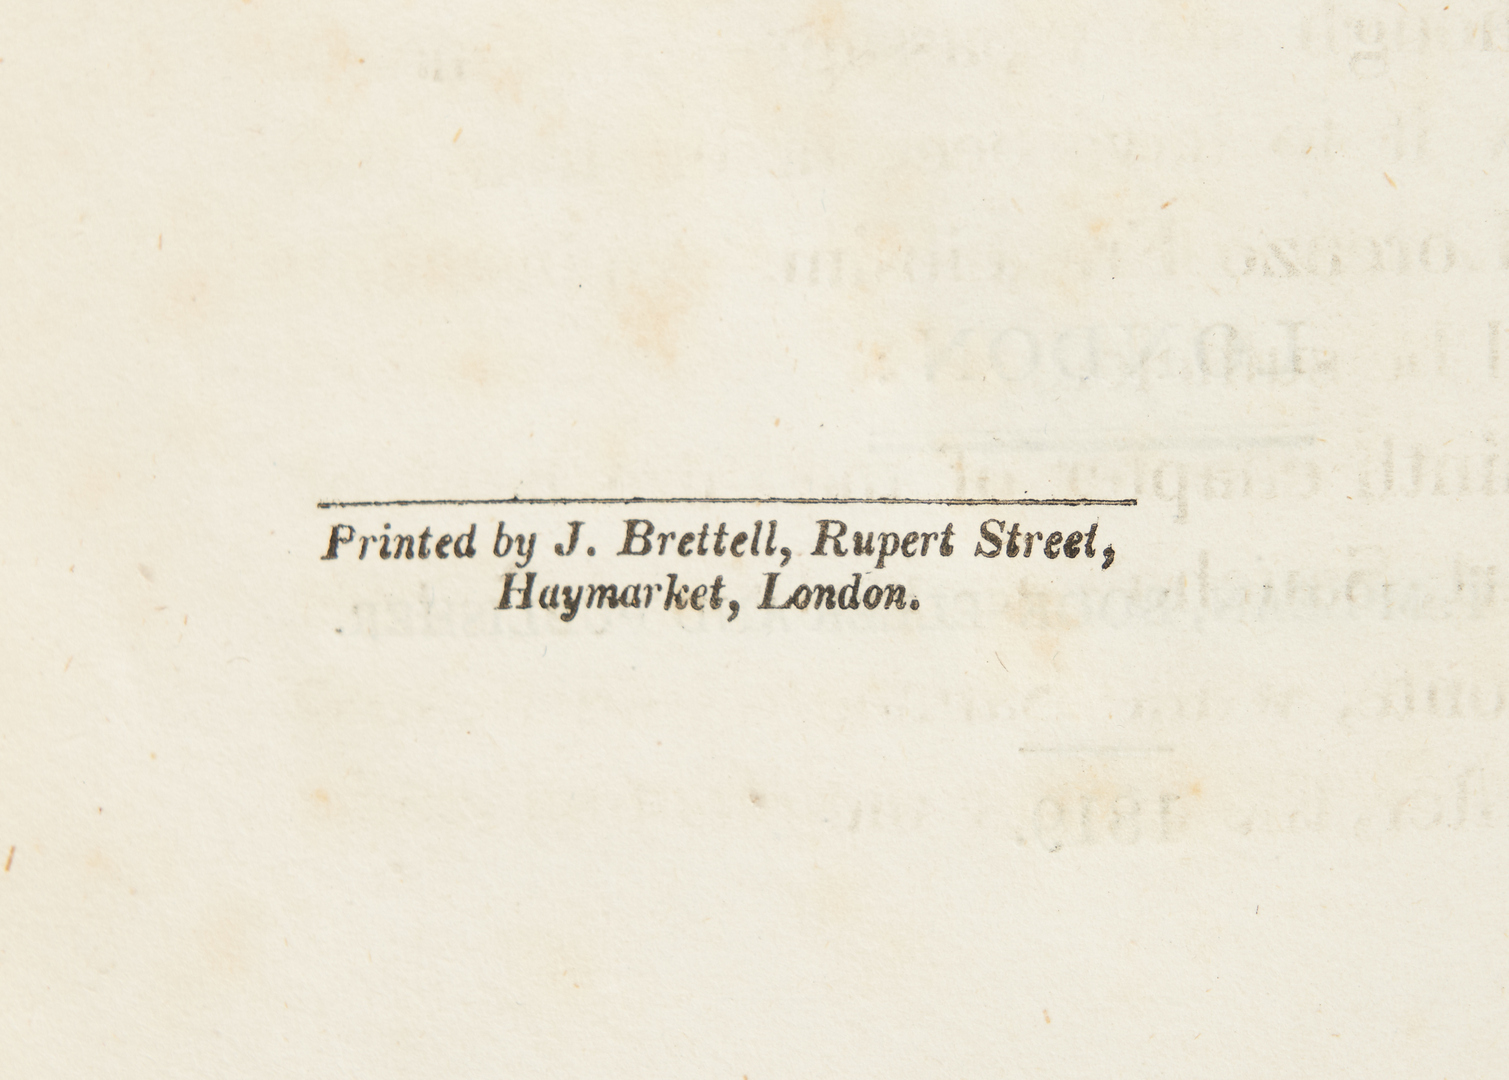 Lot 379: Jarvis, DON QUIXOTE DE LA MANCHA, Vol. I-IV, 1819